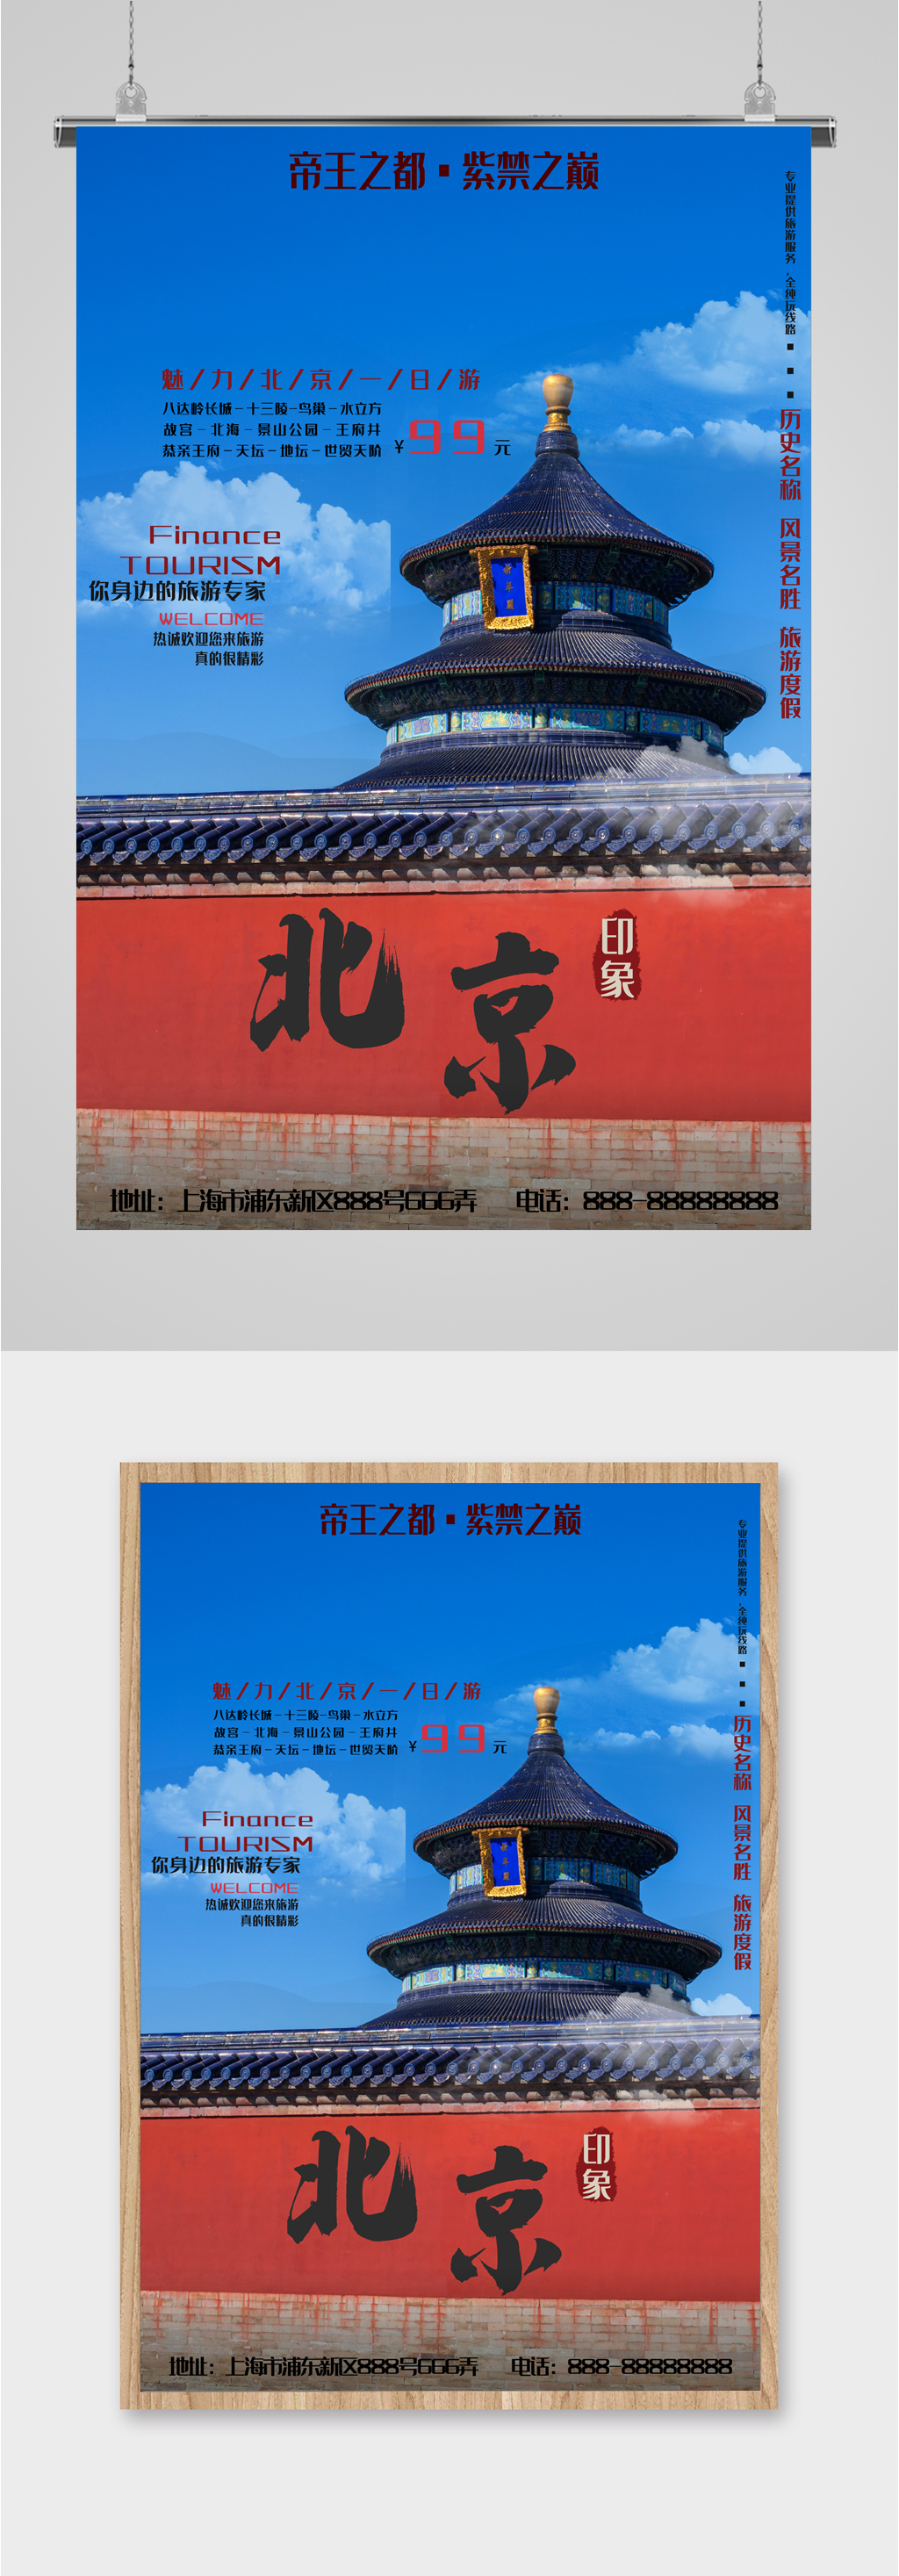 北京风景旅行海报素材免费下载,本作品是由图图上传的原创平面广告